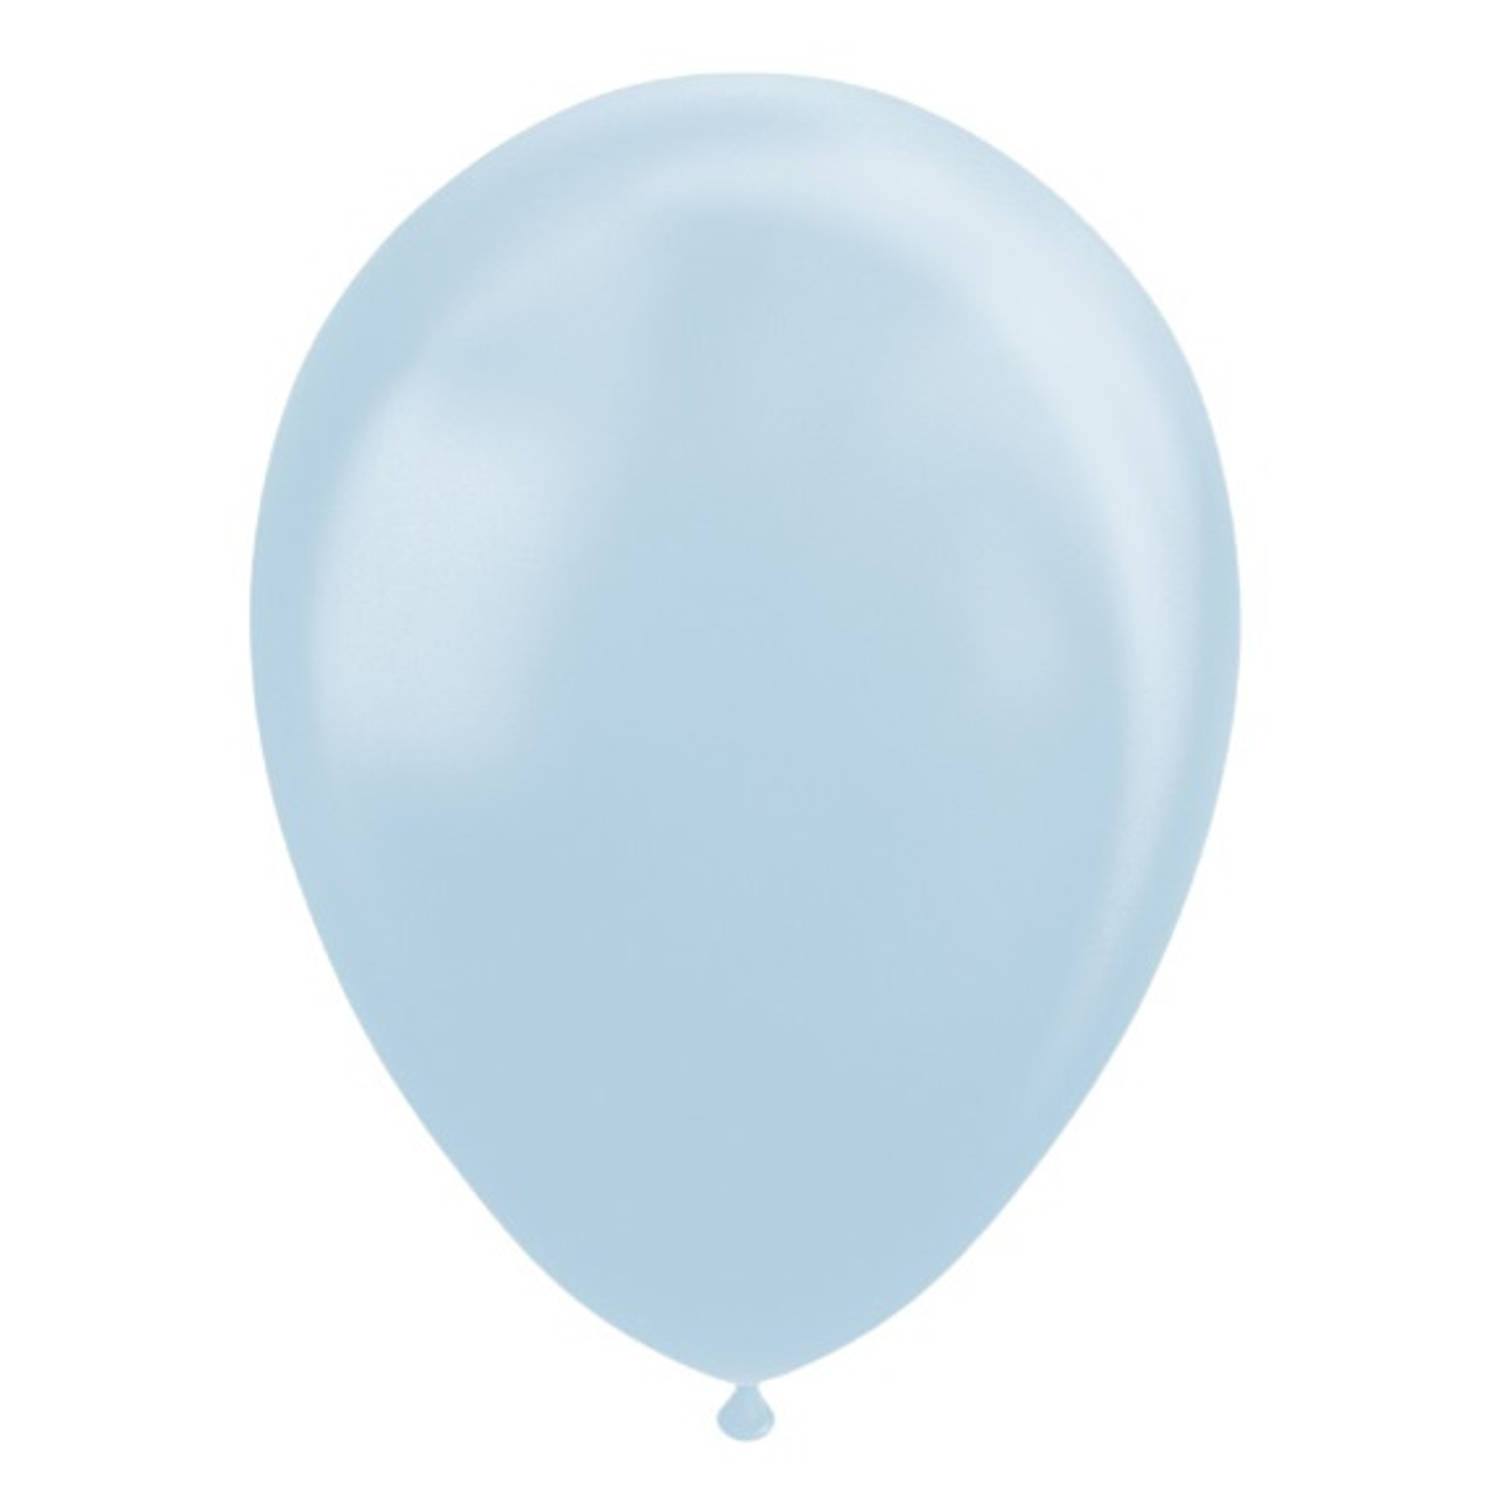 Ballonnen - Lichtblauw - Metallic - 30cm - 10st.